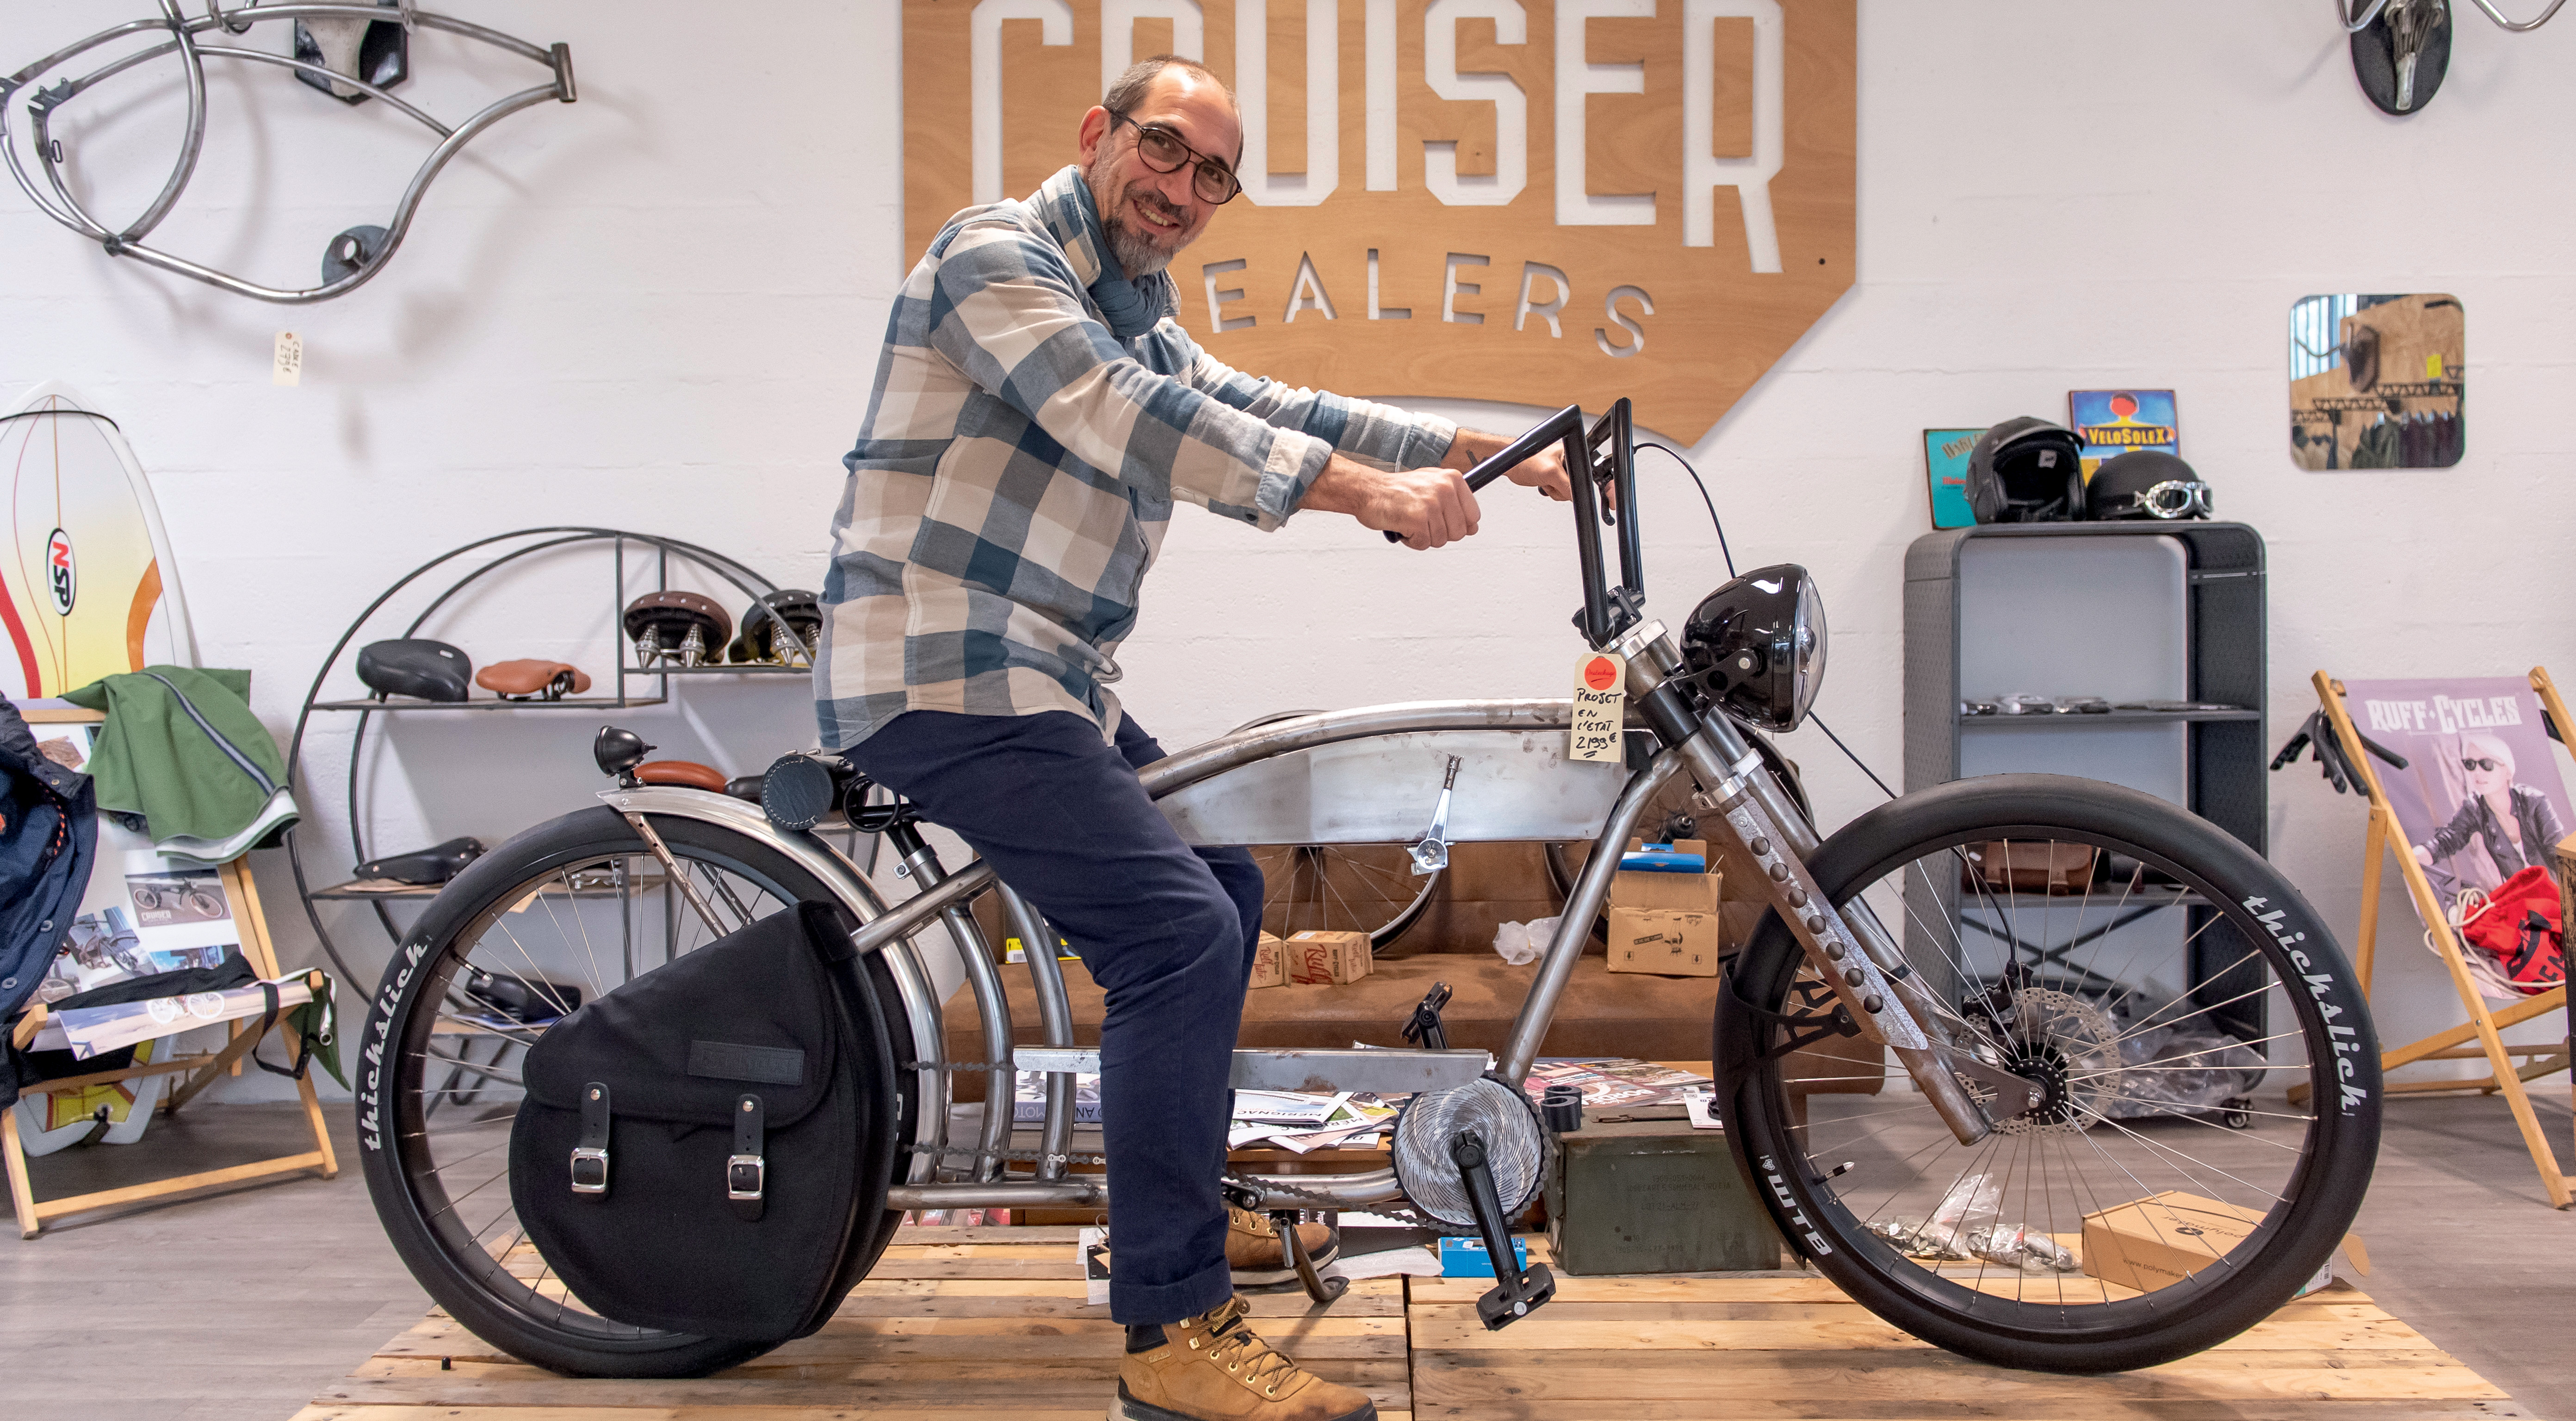 Cruiser Dealers : Customisez votre vélo !